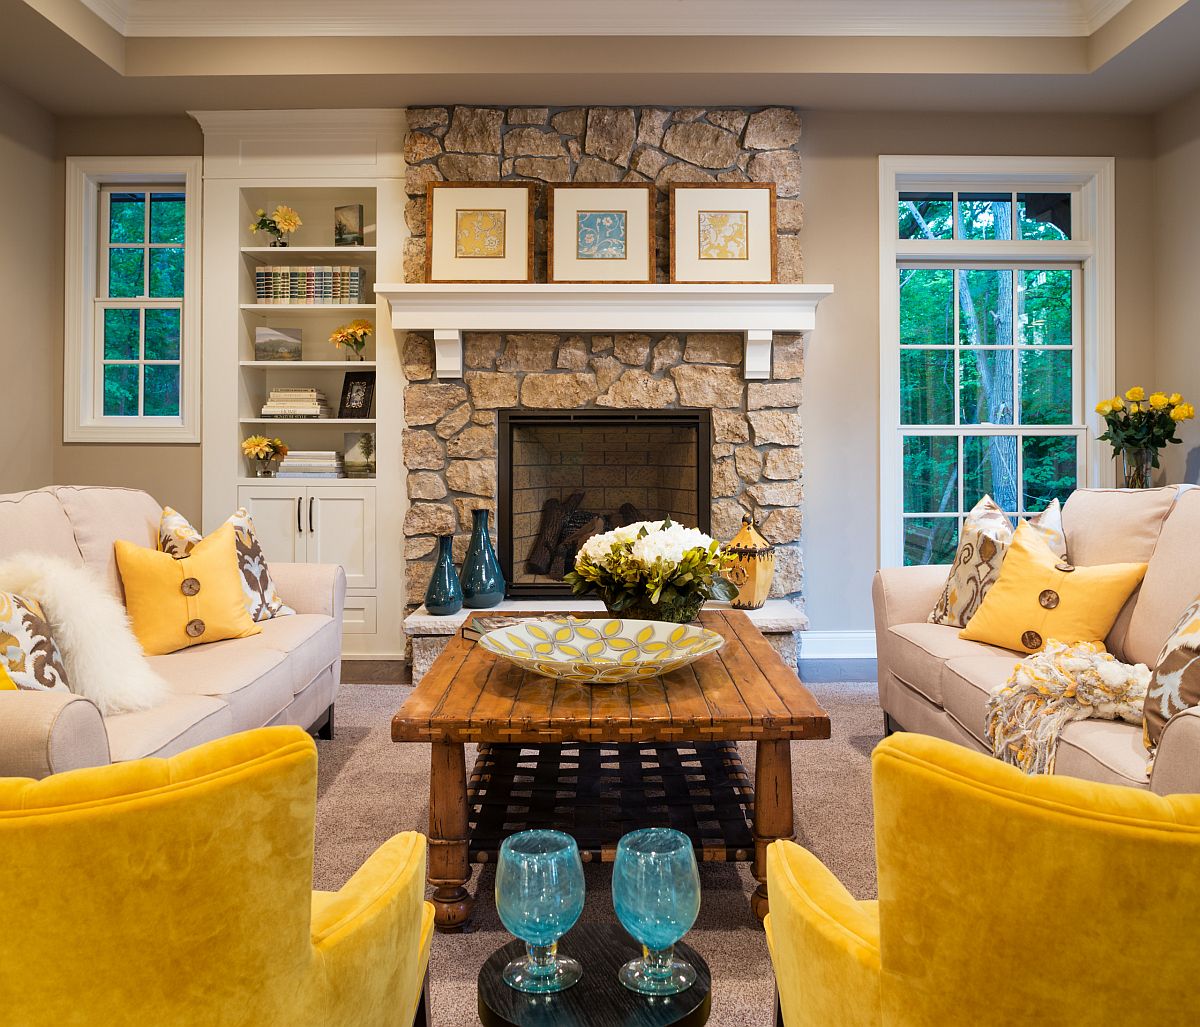 hình ảnh phòng khách nổi bật với ghế ngồi màu vàng rực rỡ